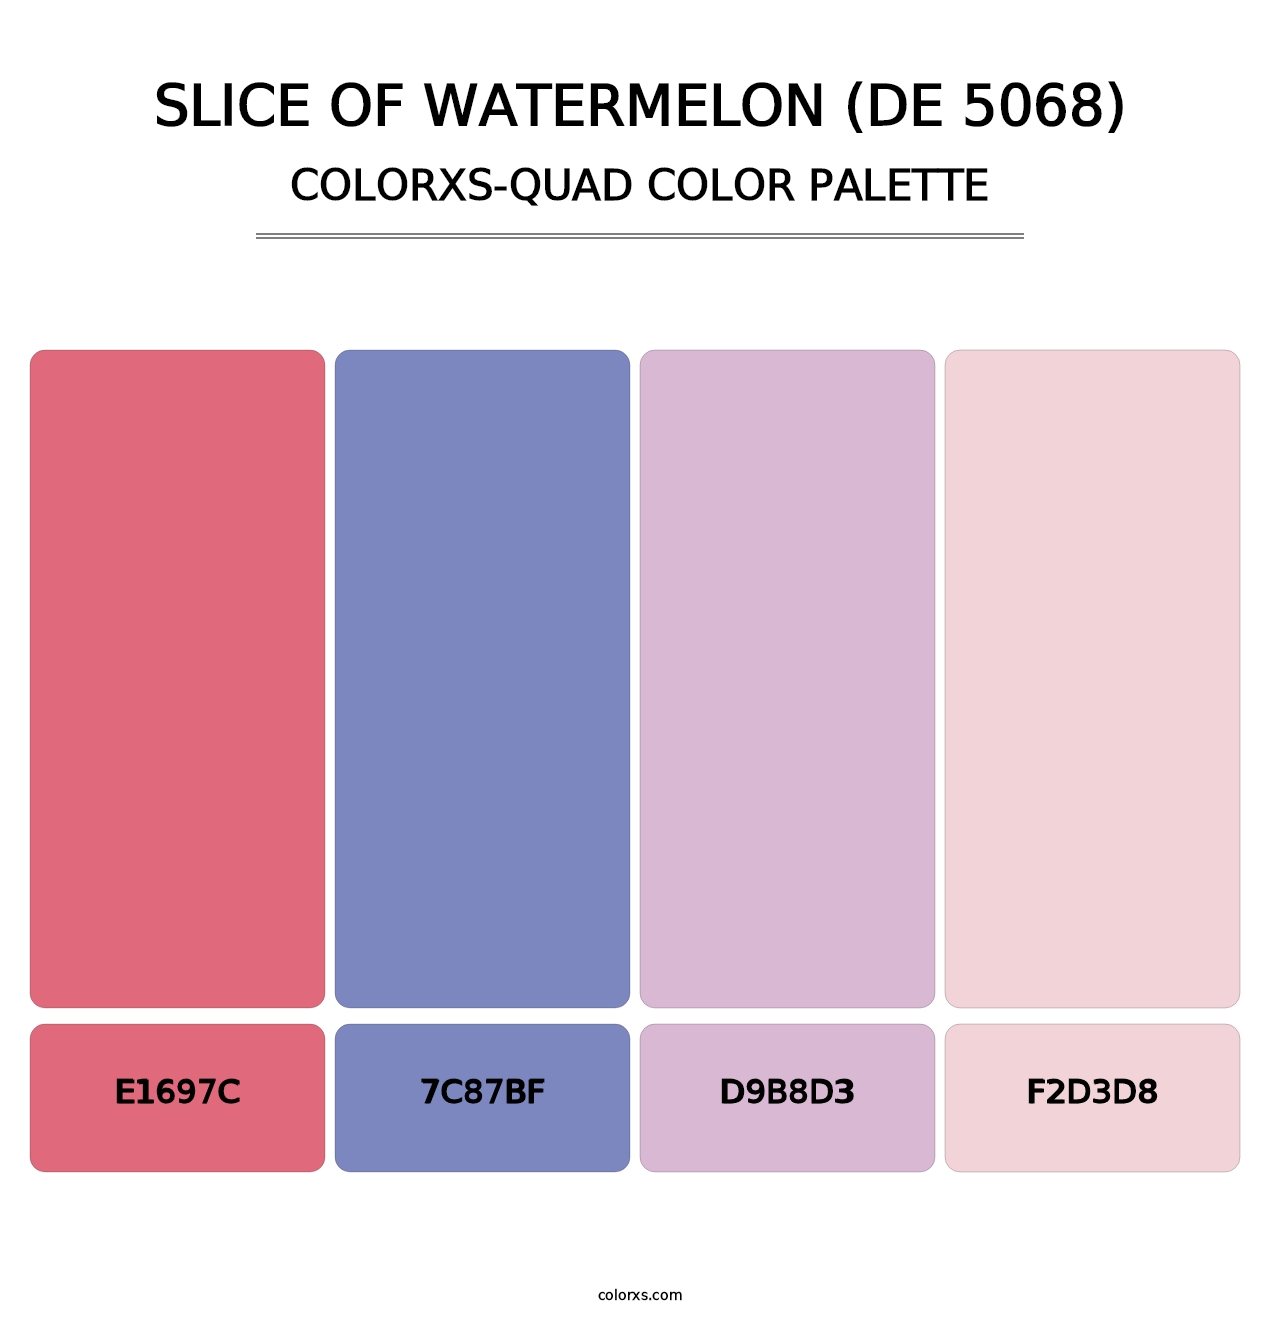 Slice of Watermelon (DE 5068) - Colorxs Quad Palette